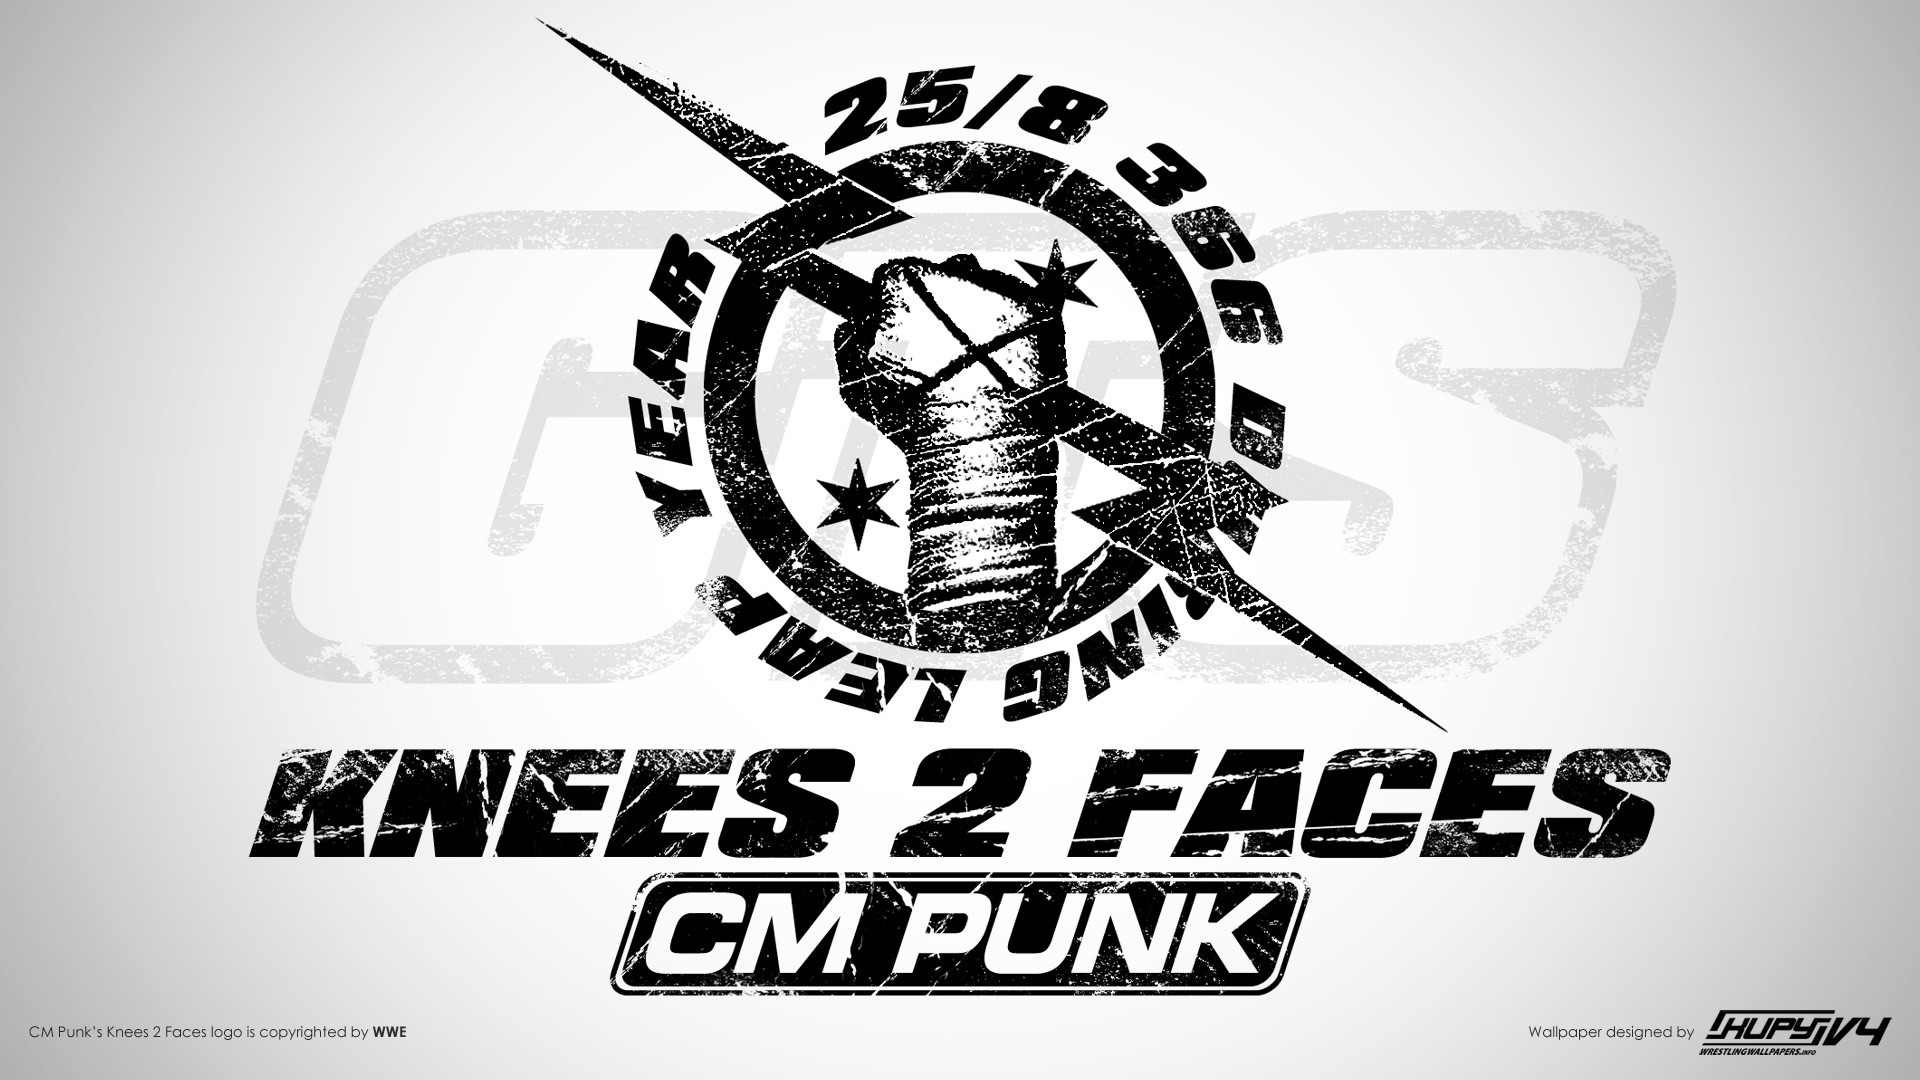 WWE WWE Wrestling CM Punk 1920x1080